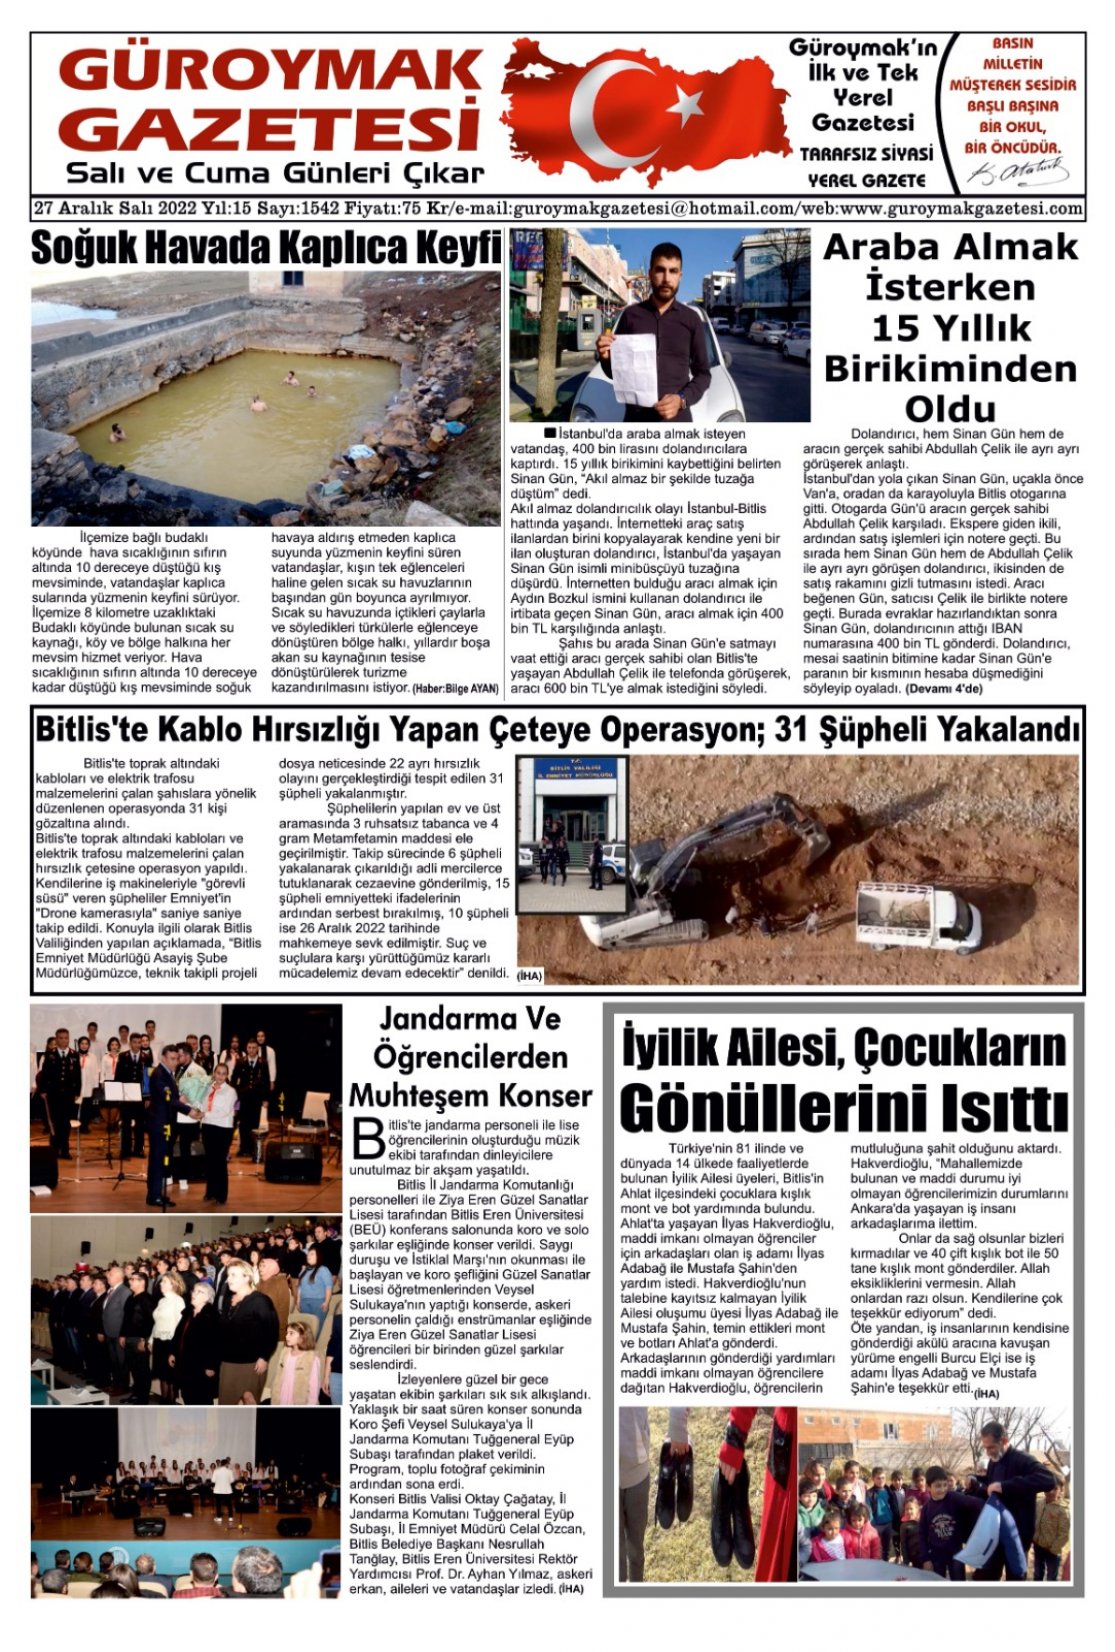 Güroymak Gazetesi WhatsApp Image 2022-12-27 at 09.46.39.jpeg Sayılı Gazete Küpürü